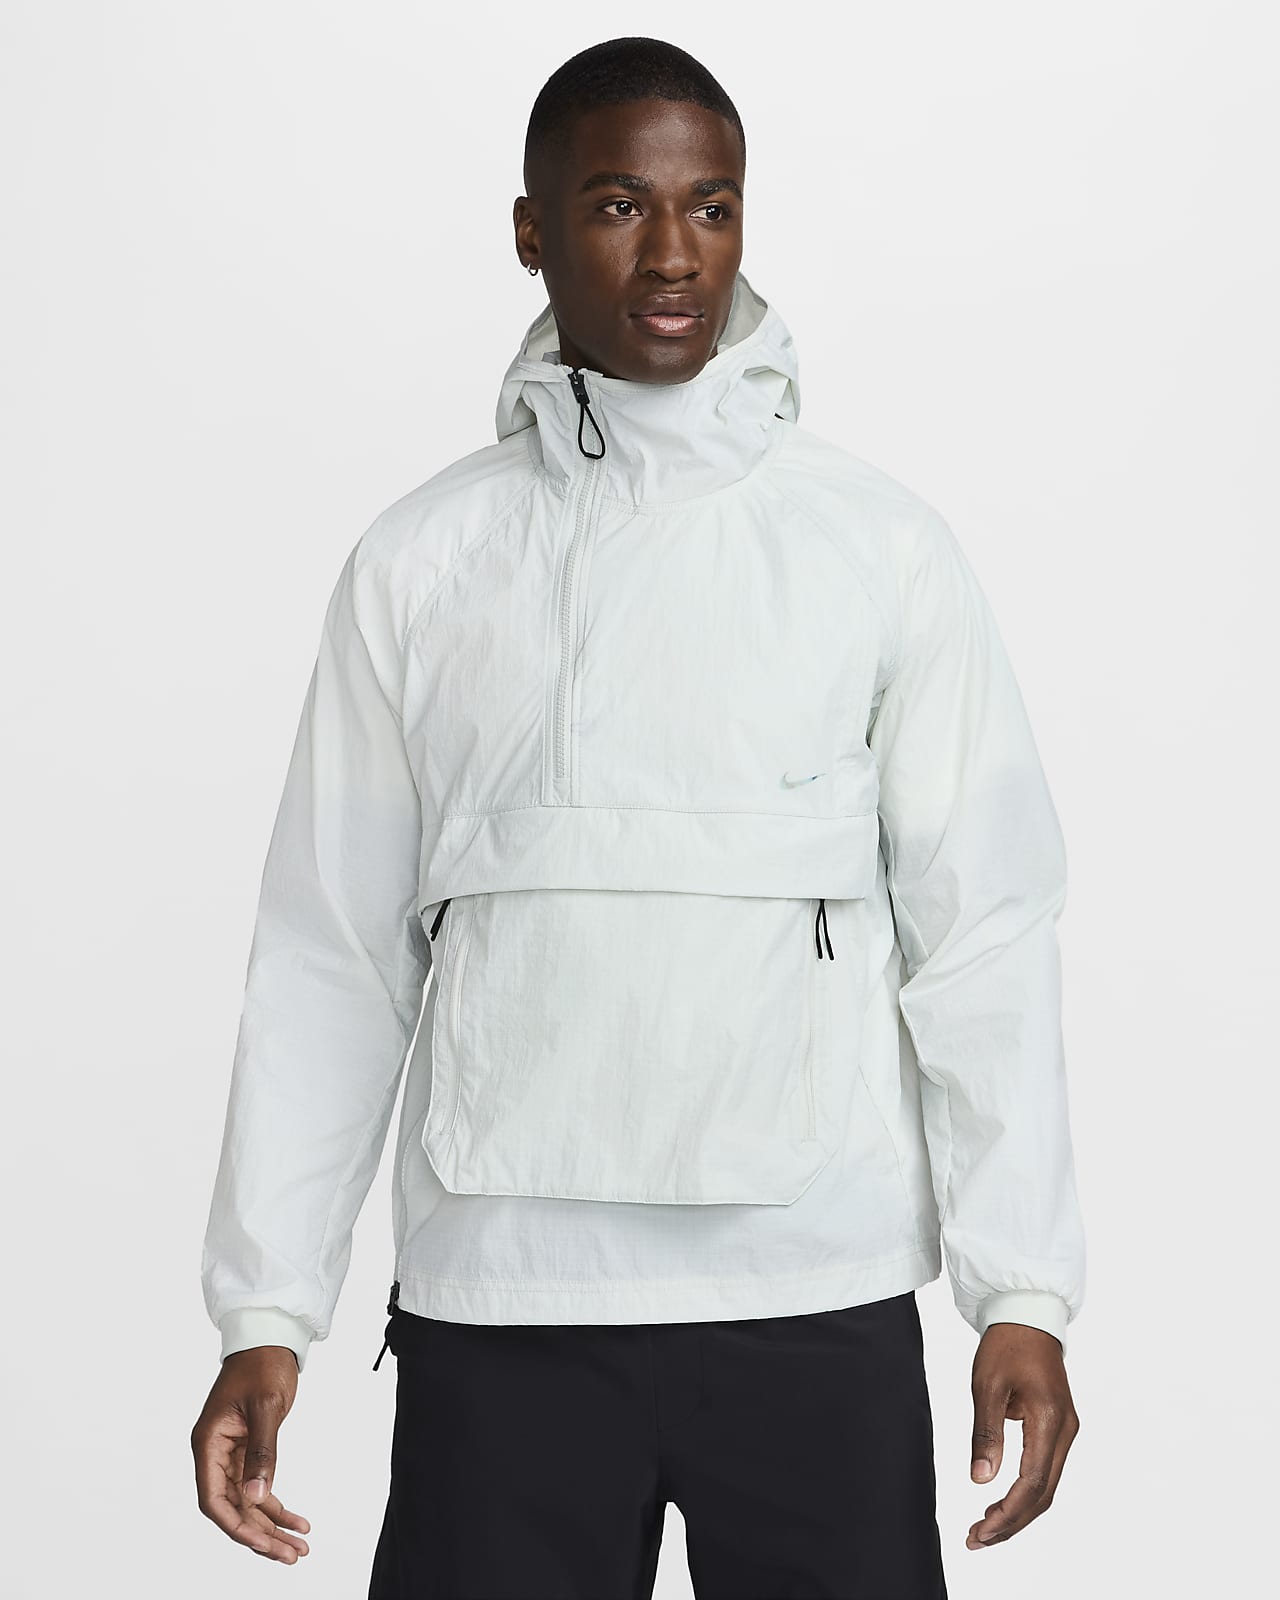 Nike A.P.S. Vielseitige, leichte UV Repel-Jacke für Herren